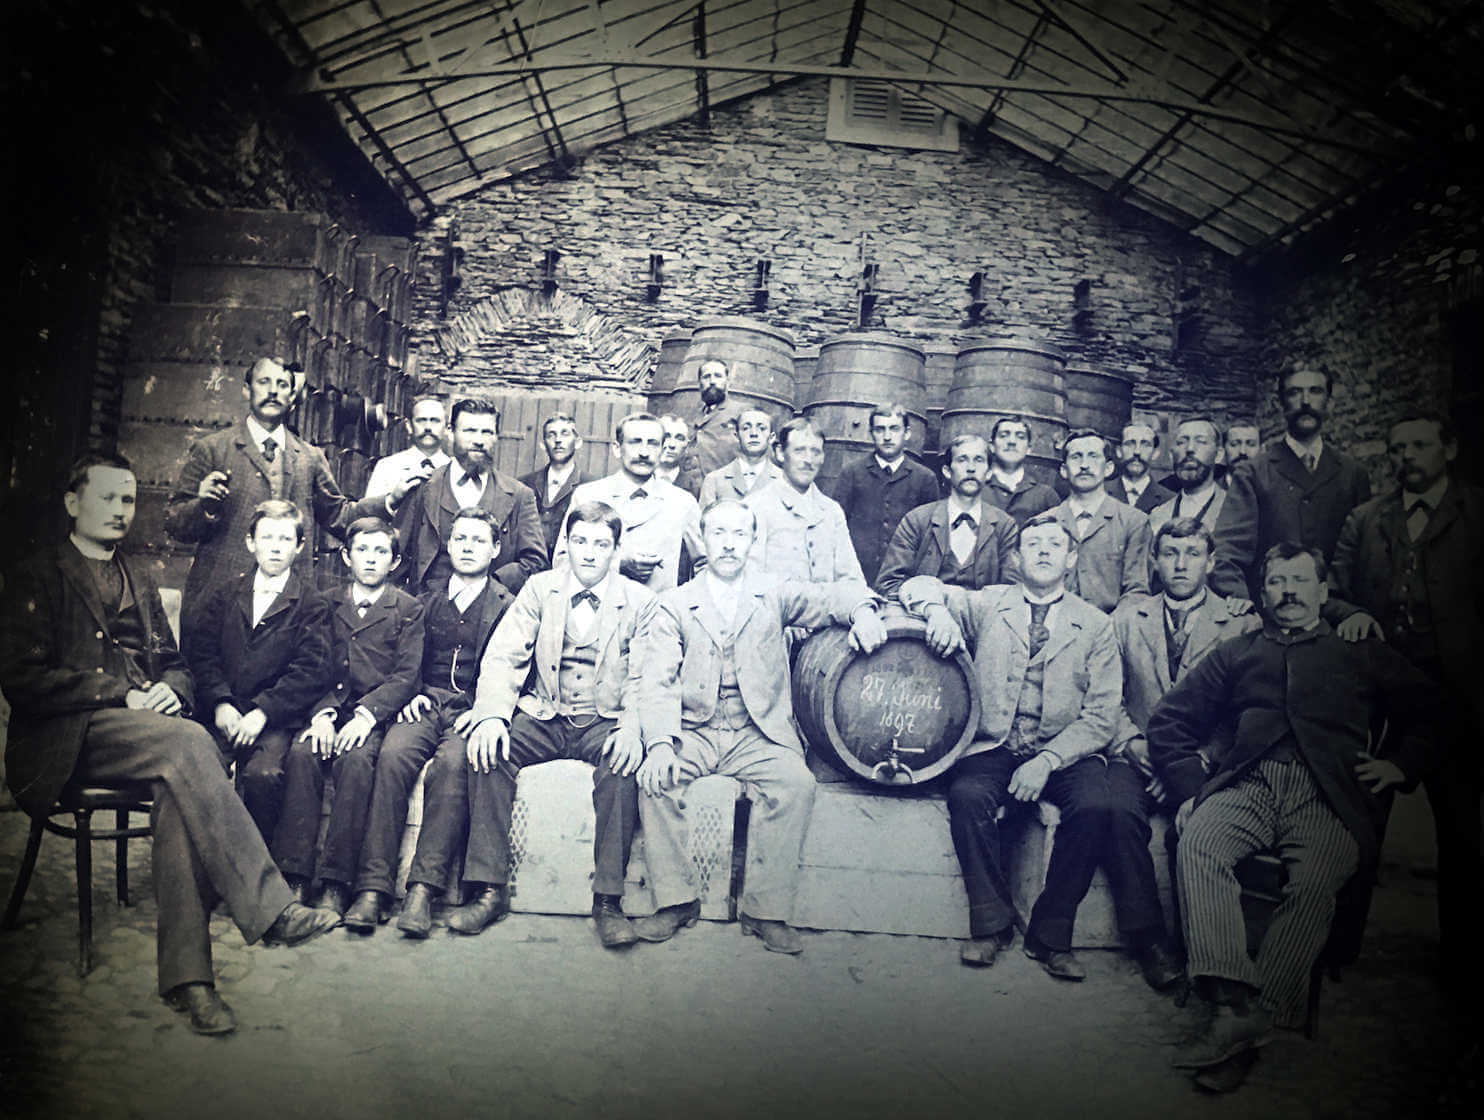 Historischer Weinhandel: im 19. Jahrhundert war Traben-Trarbach neben Bordeaux der wichtigste Ort für den Weinhandel - diese besondere Stadtgeschichte wird der gute Kern der Vinothek und Weinhandlung